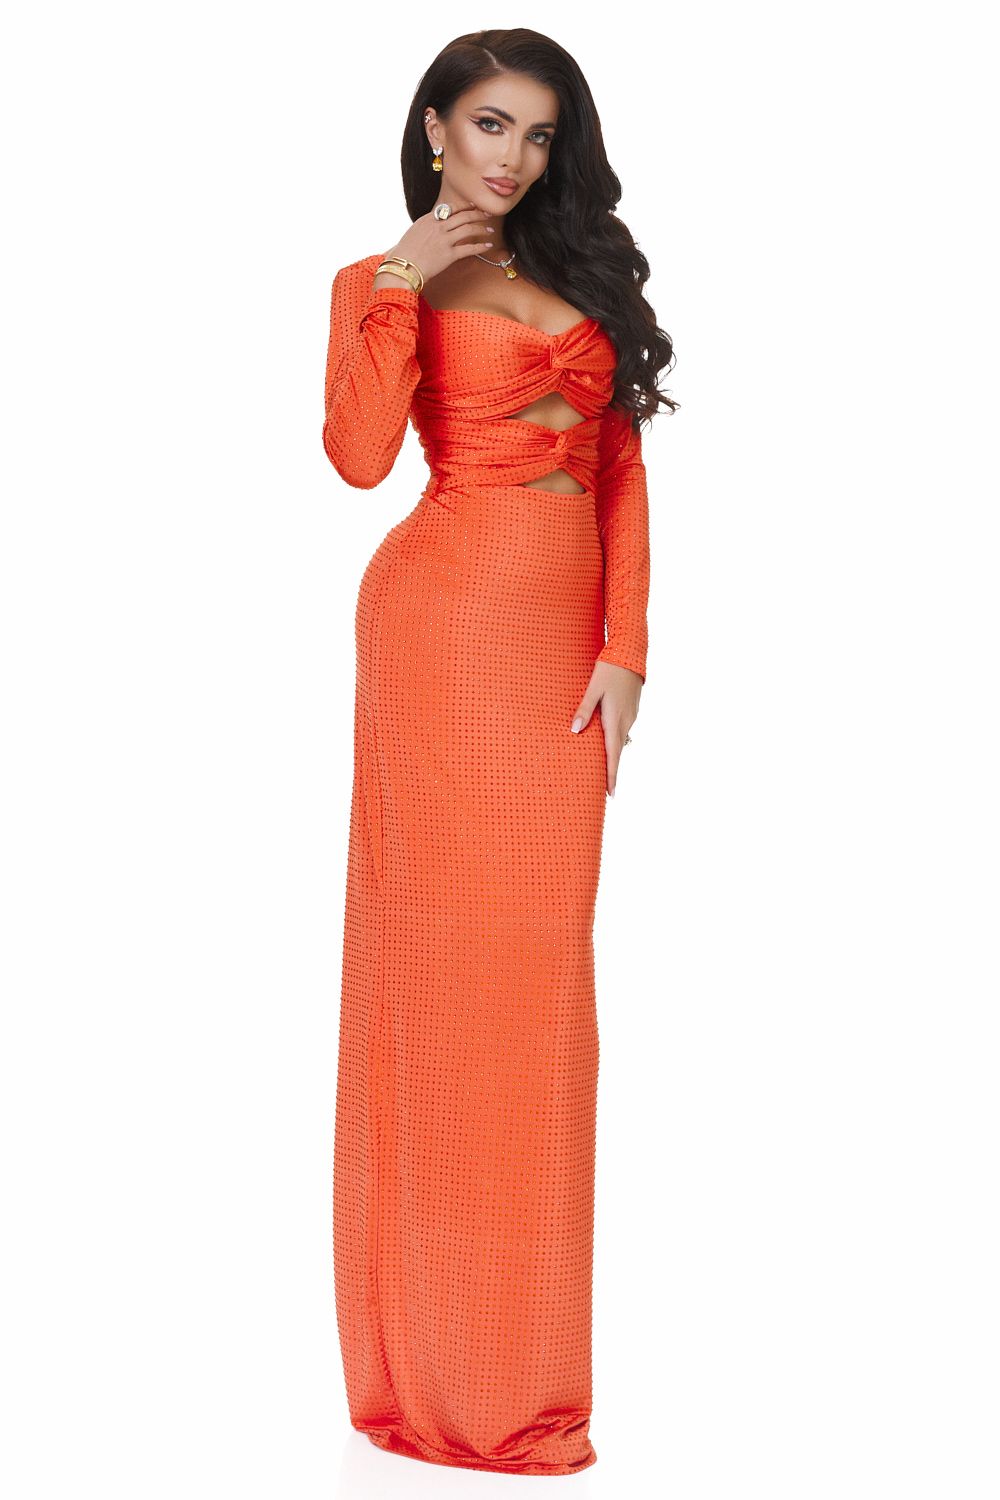 Дамска дълга оранжева рокля Ventuza Bogas